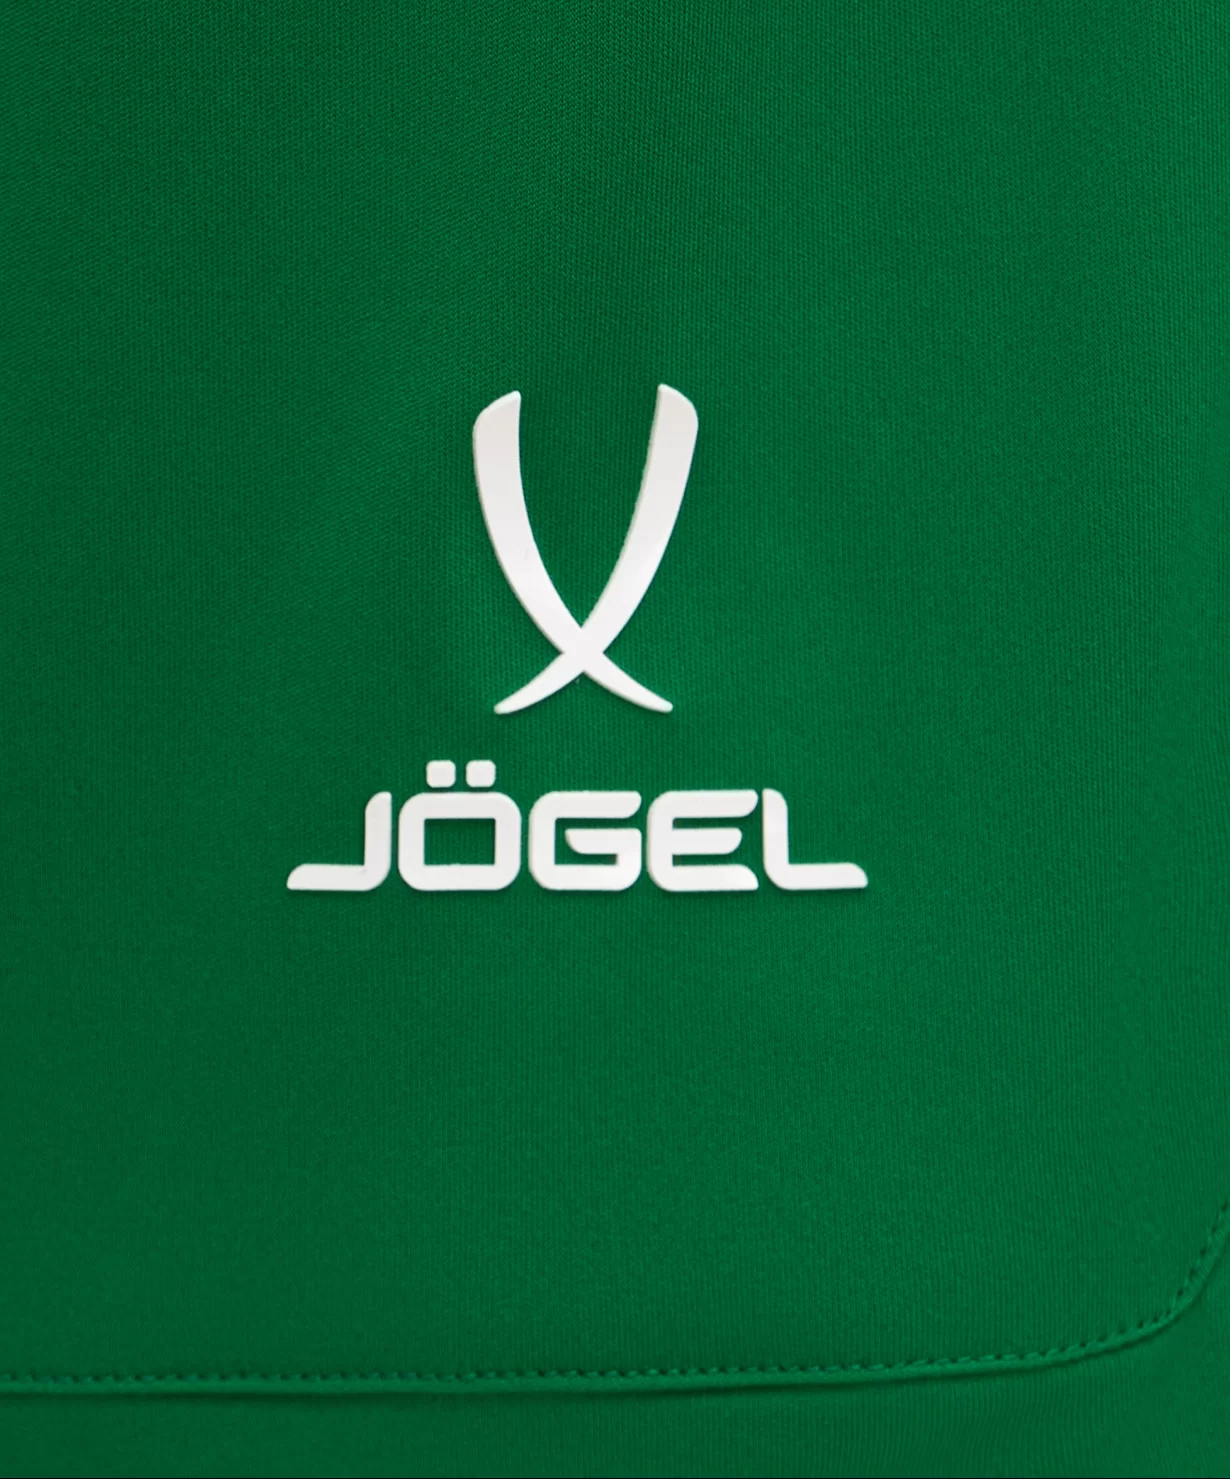 Реальное фото Шорты игровые DIVISION PerFormDRY Union Shorts, зеленый Jögel от магазина Спортев